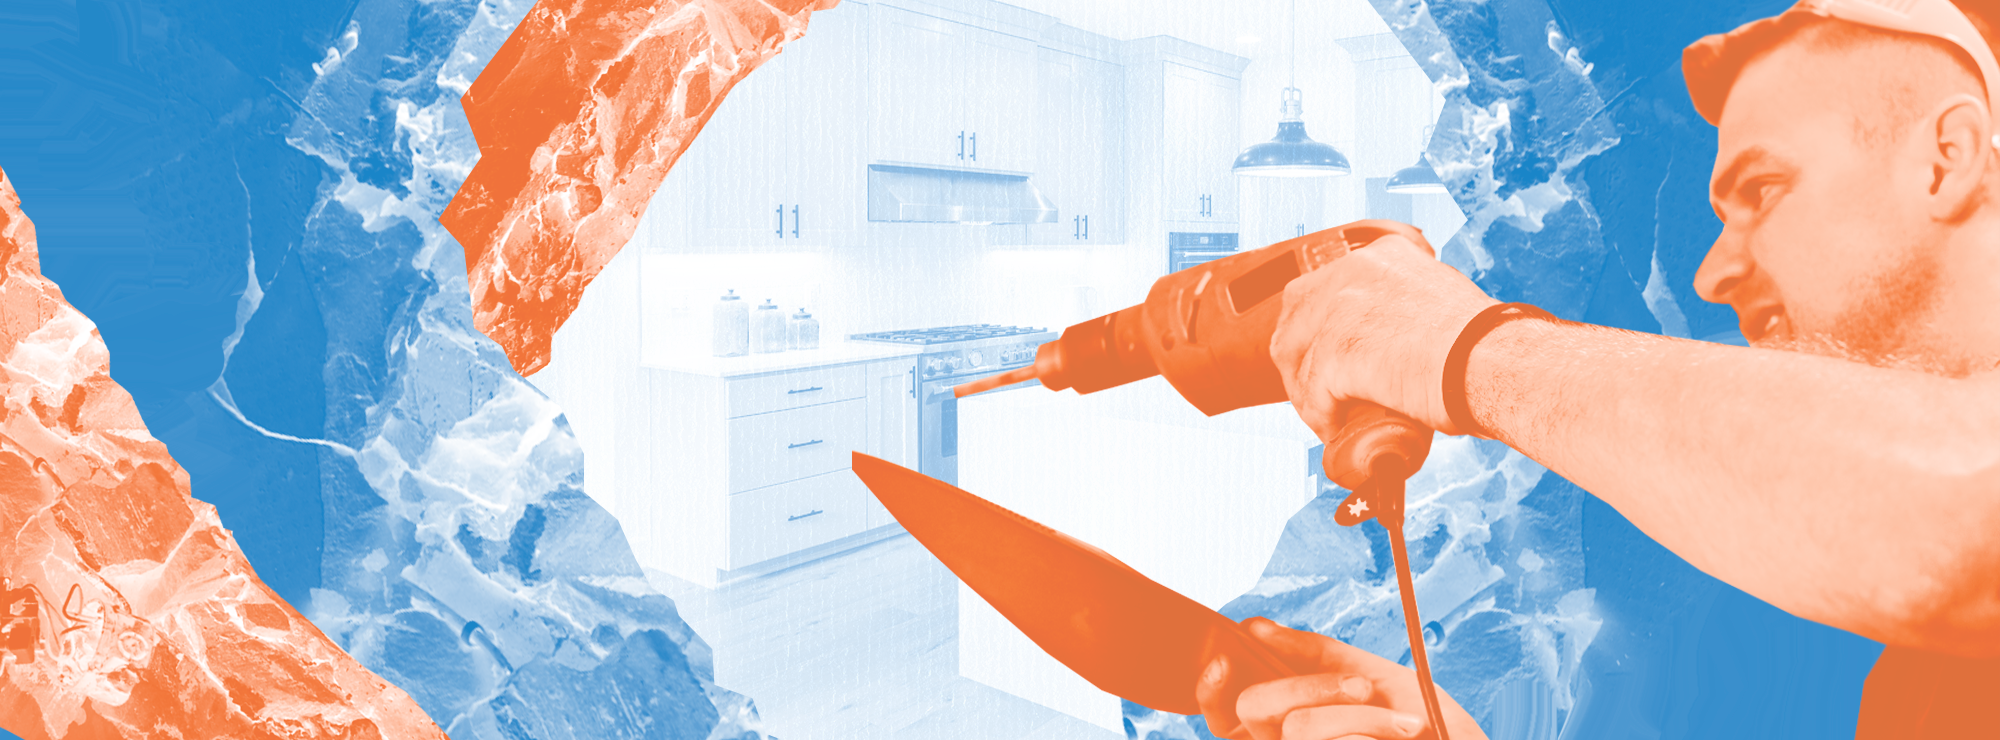 Полноразмерная обложка поста на тему: Как законно объединить кухню с комнатой